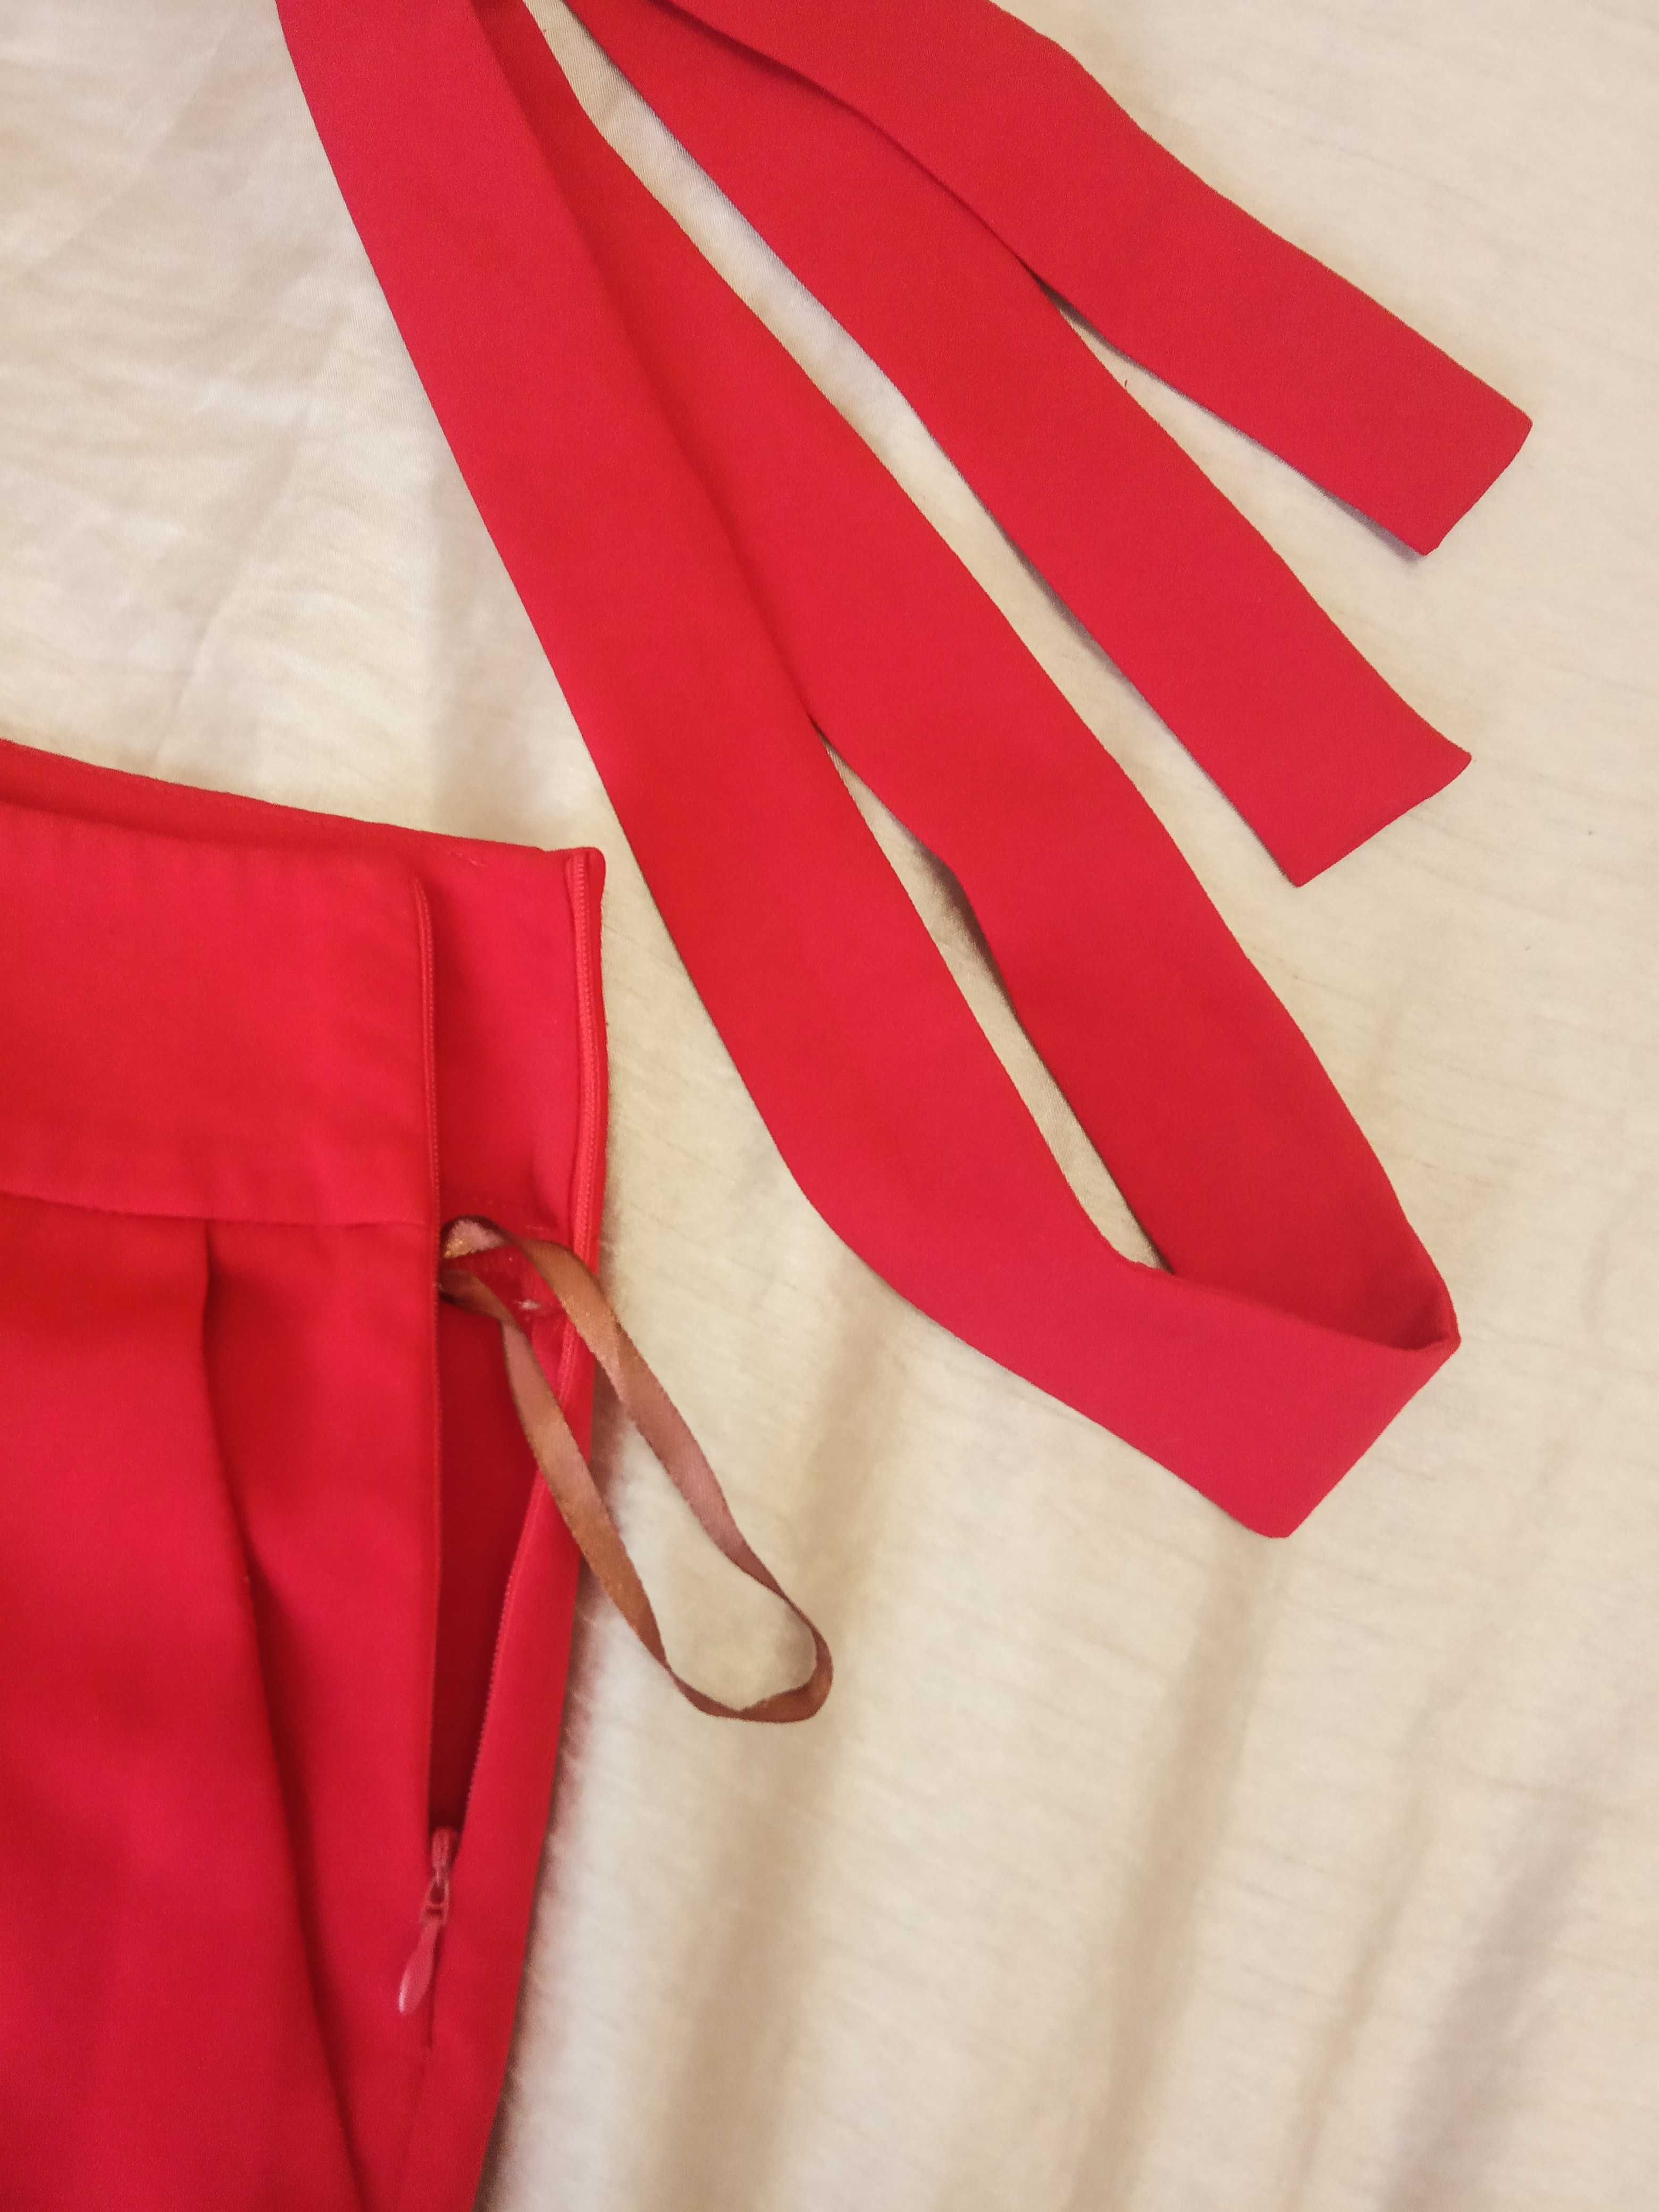 Жіночий червоний брючний костюм двійка maryline s/m український бренд